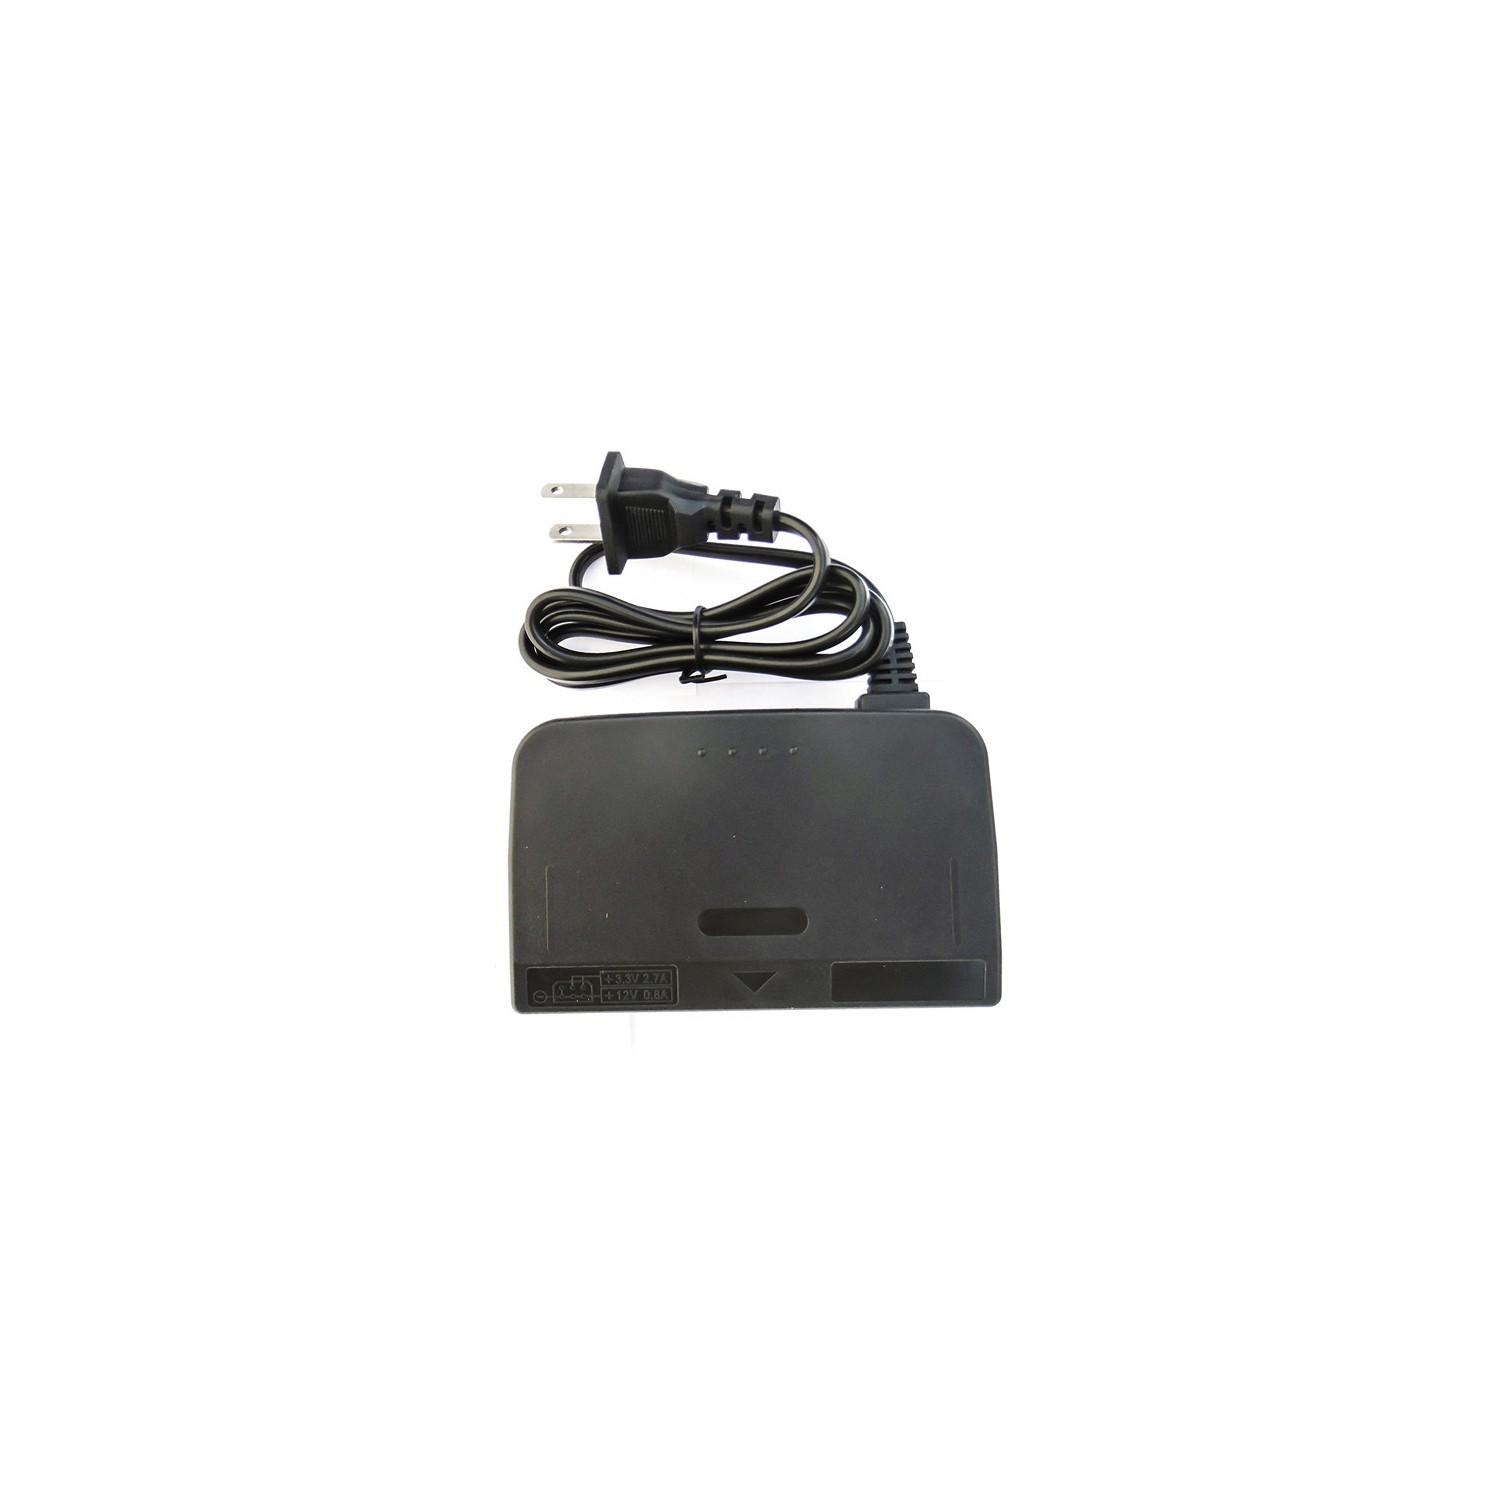 OLDSKOOL Power Adapter - Nintendo 64 (OS-1942) - Black